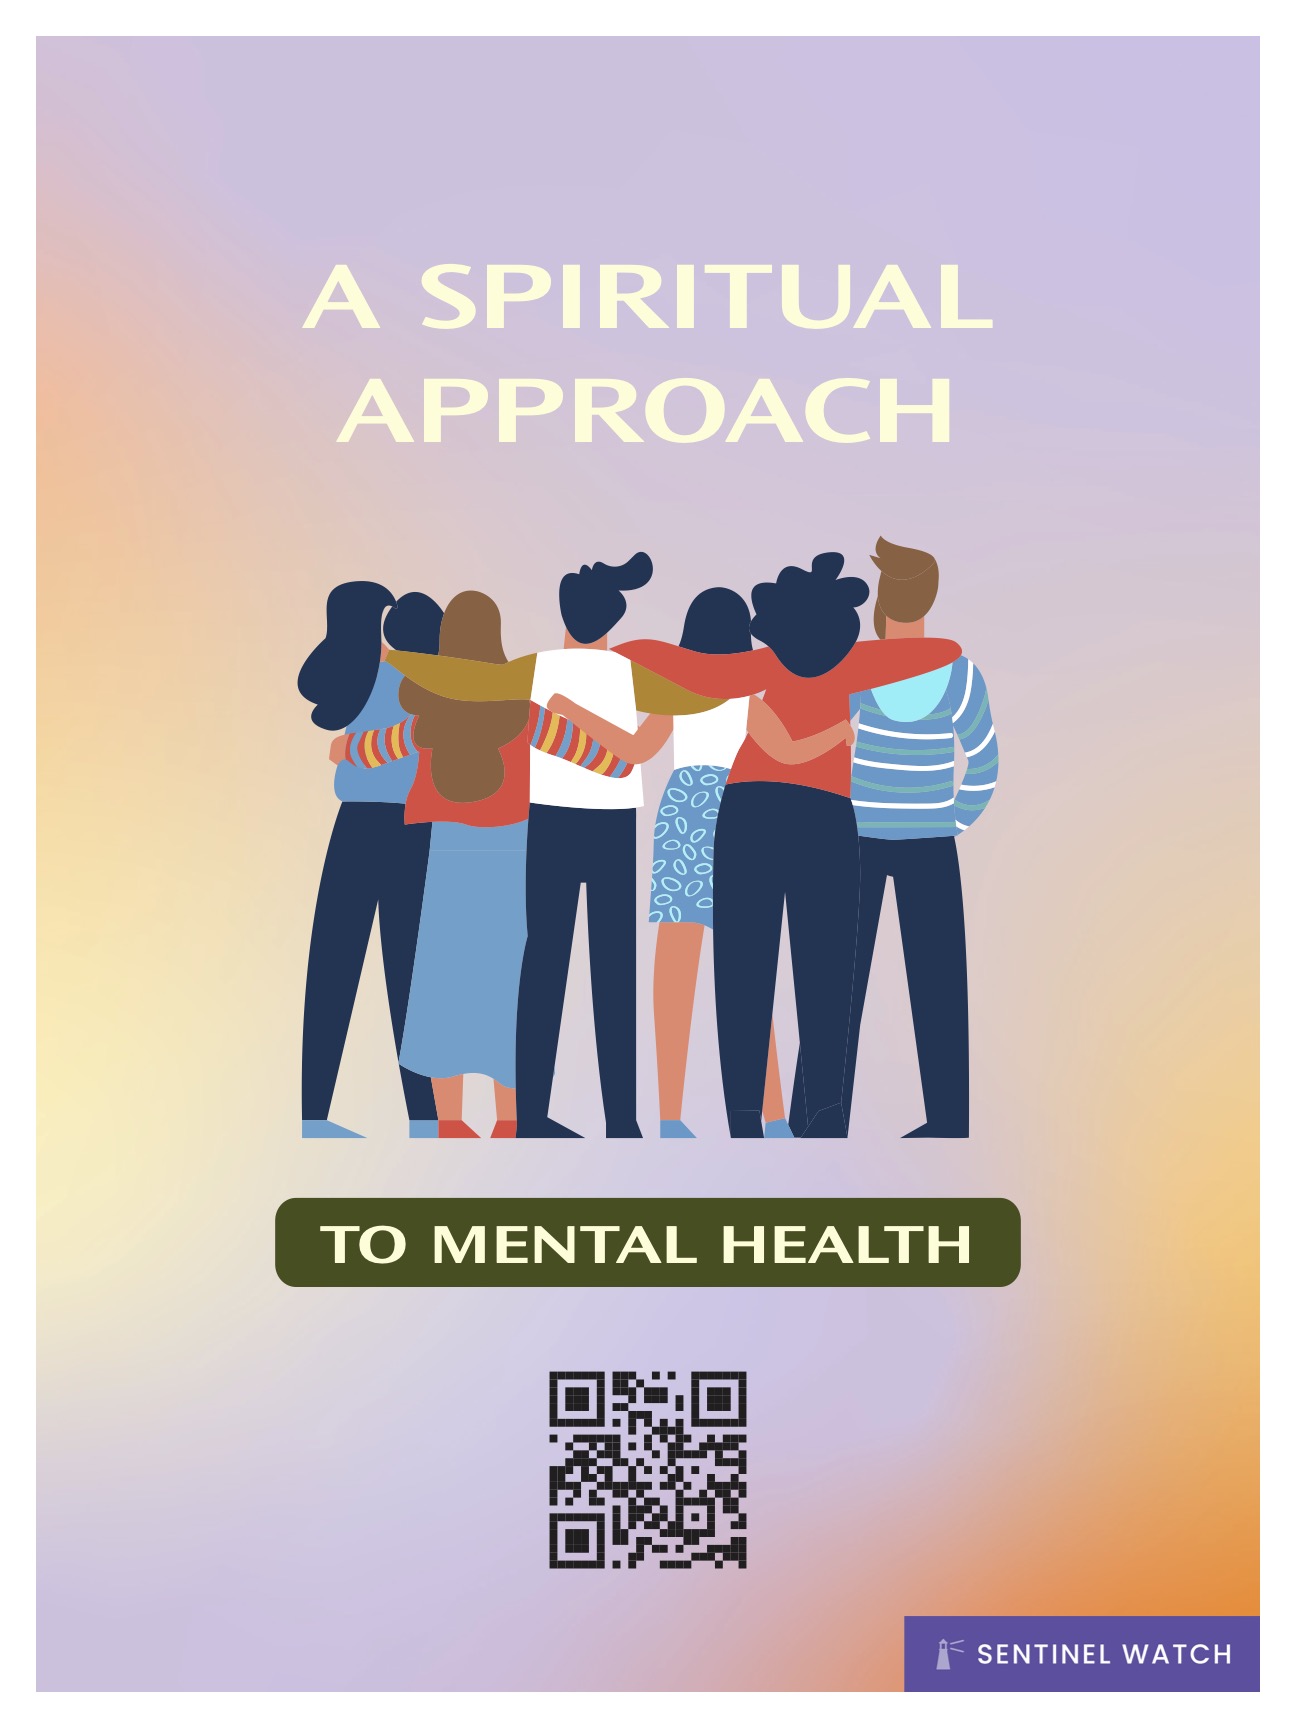 A spiritual approach to mental health